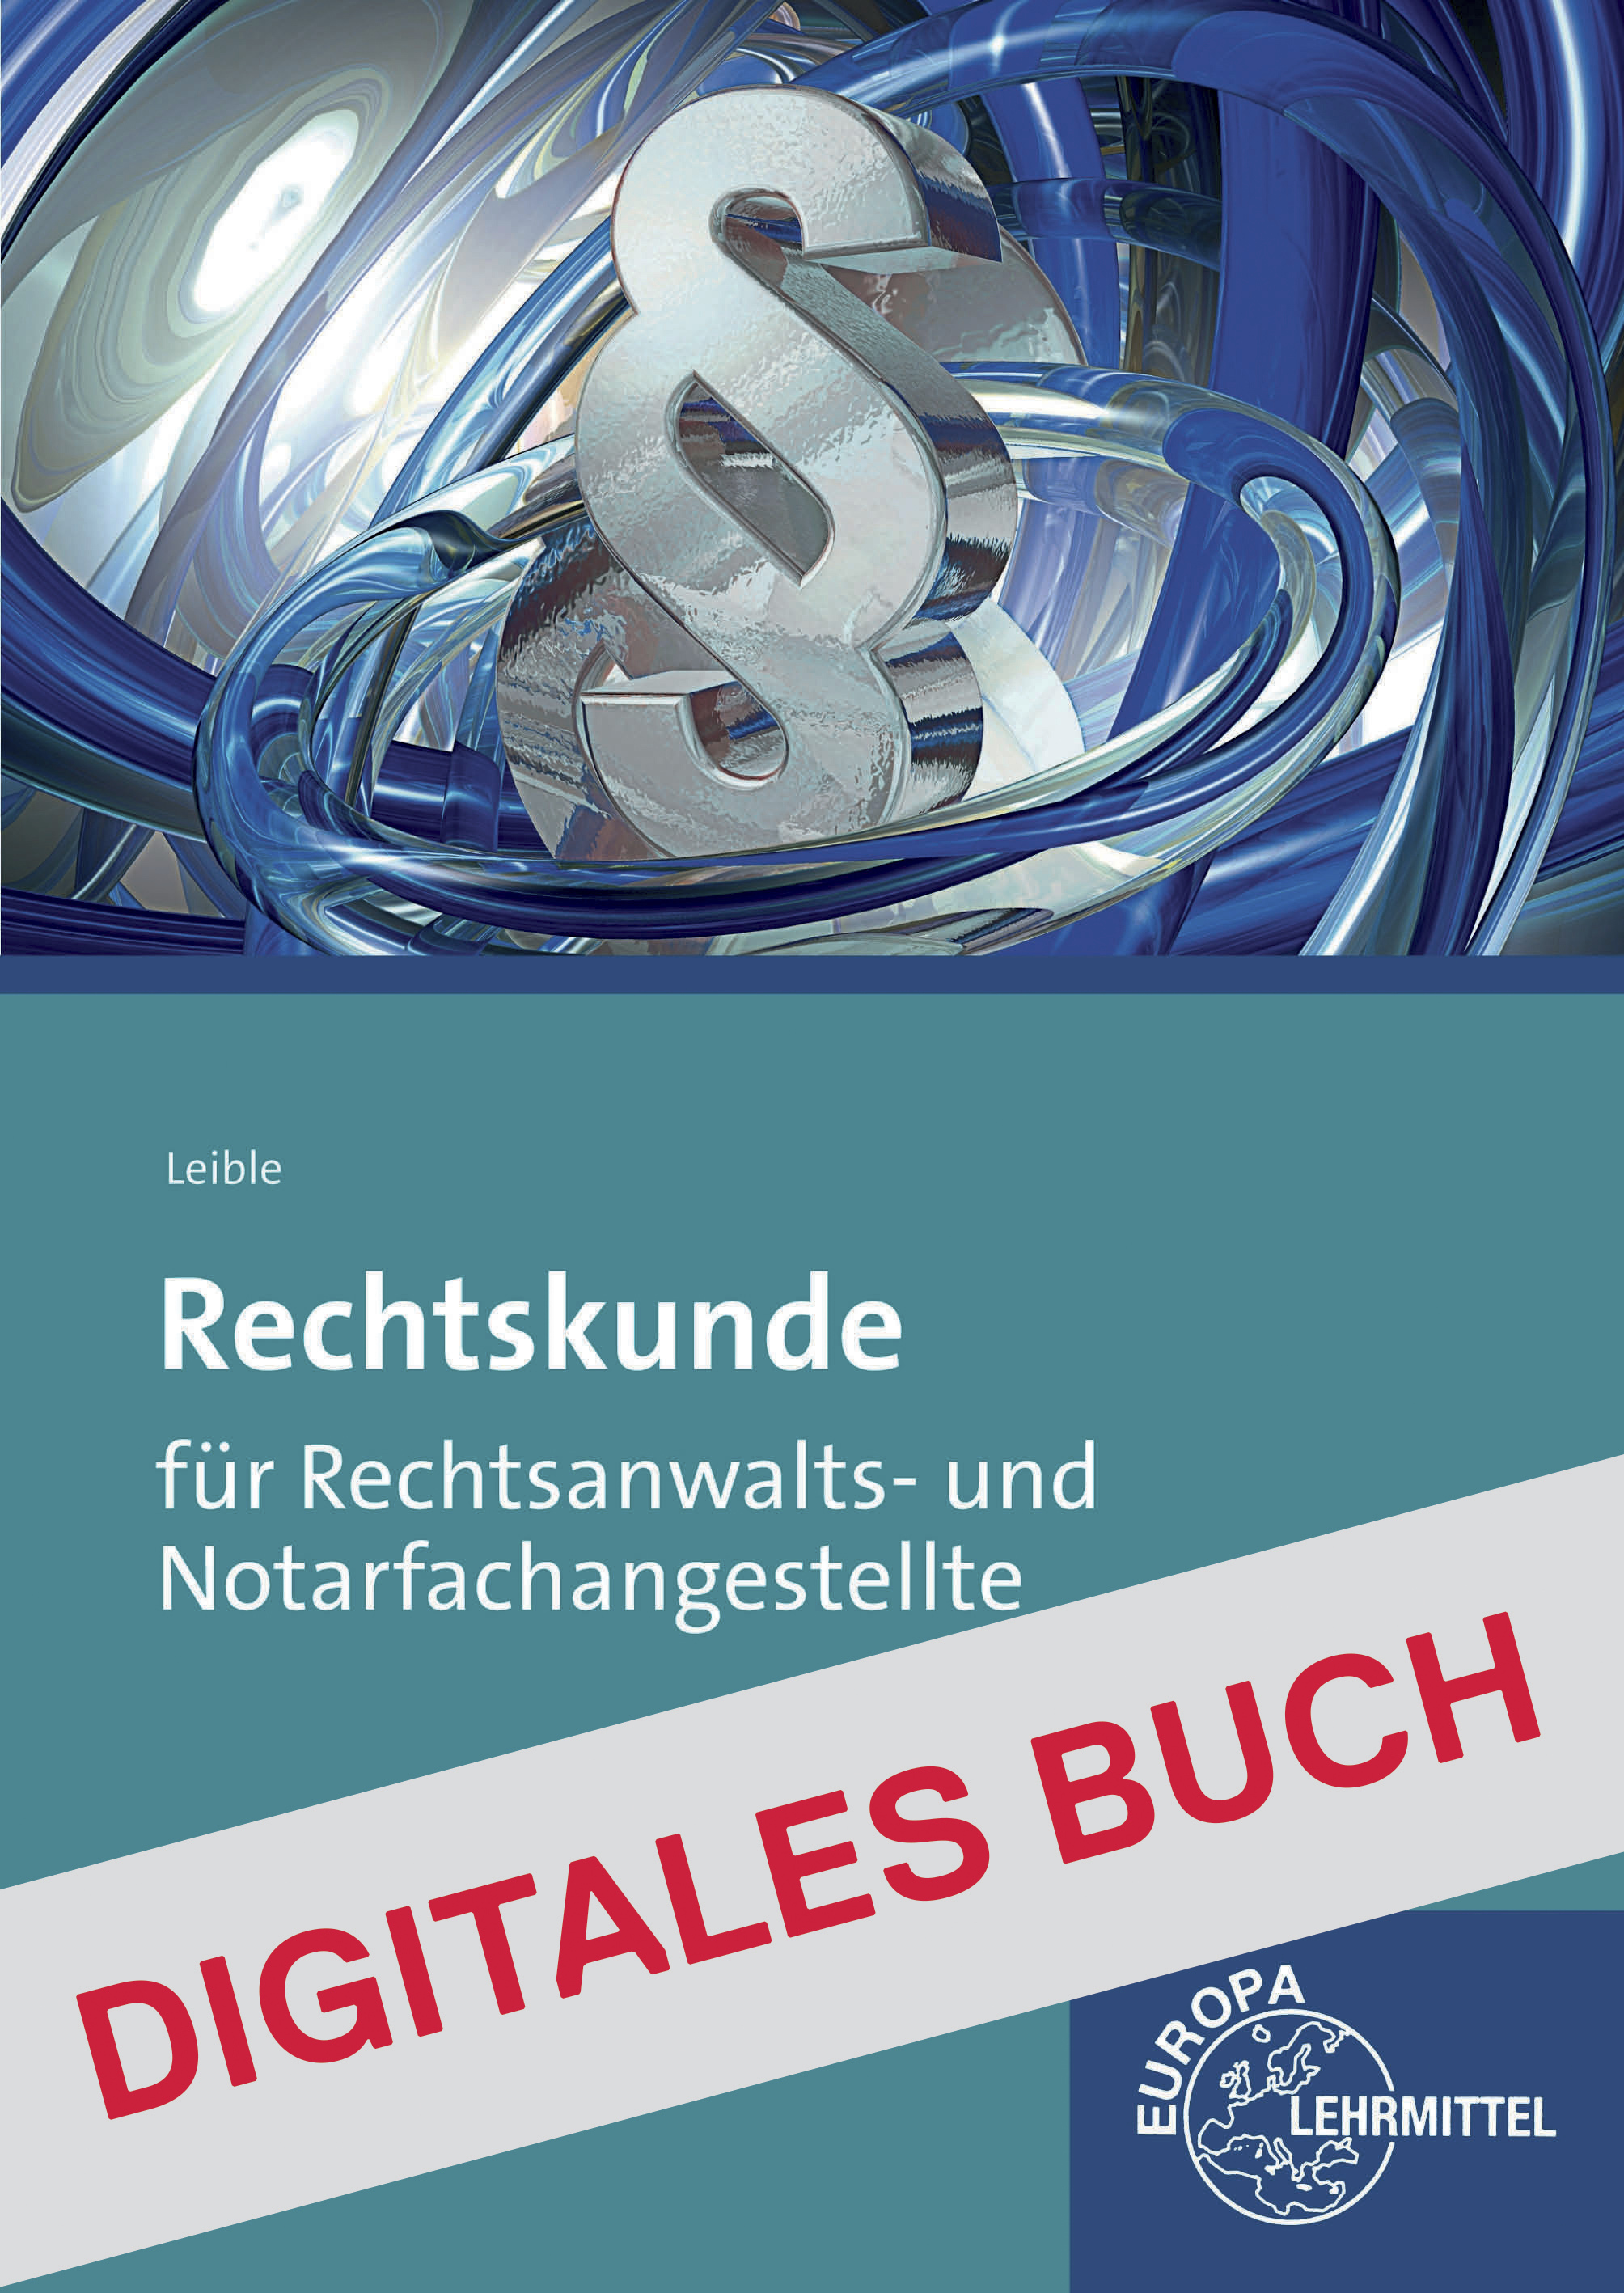 Rechtskunde Rechtsanwalt und Notarfachangestellte - Digitales Buch